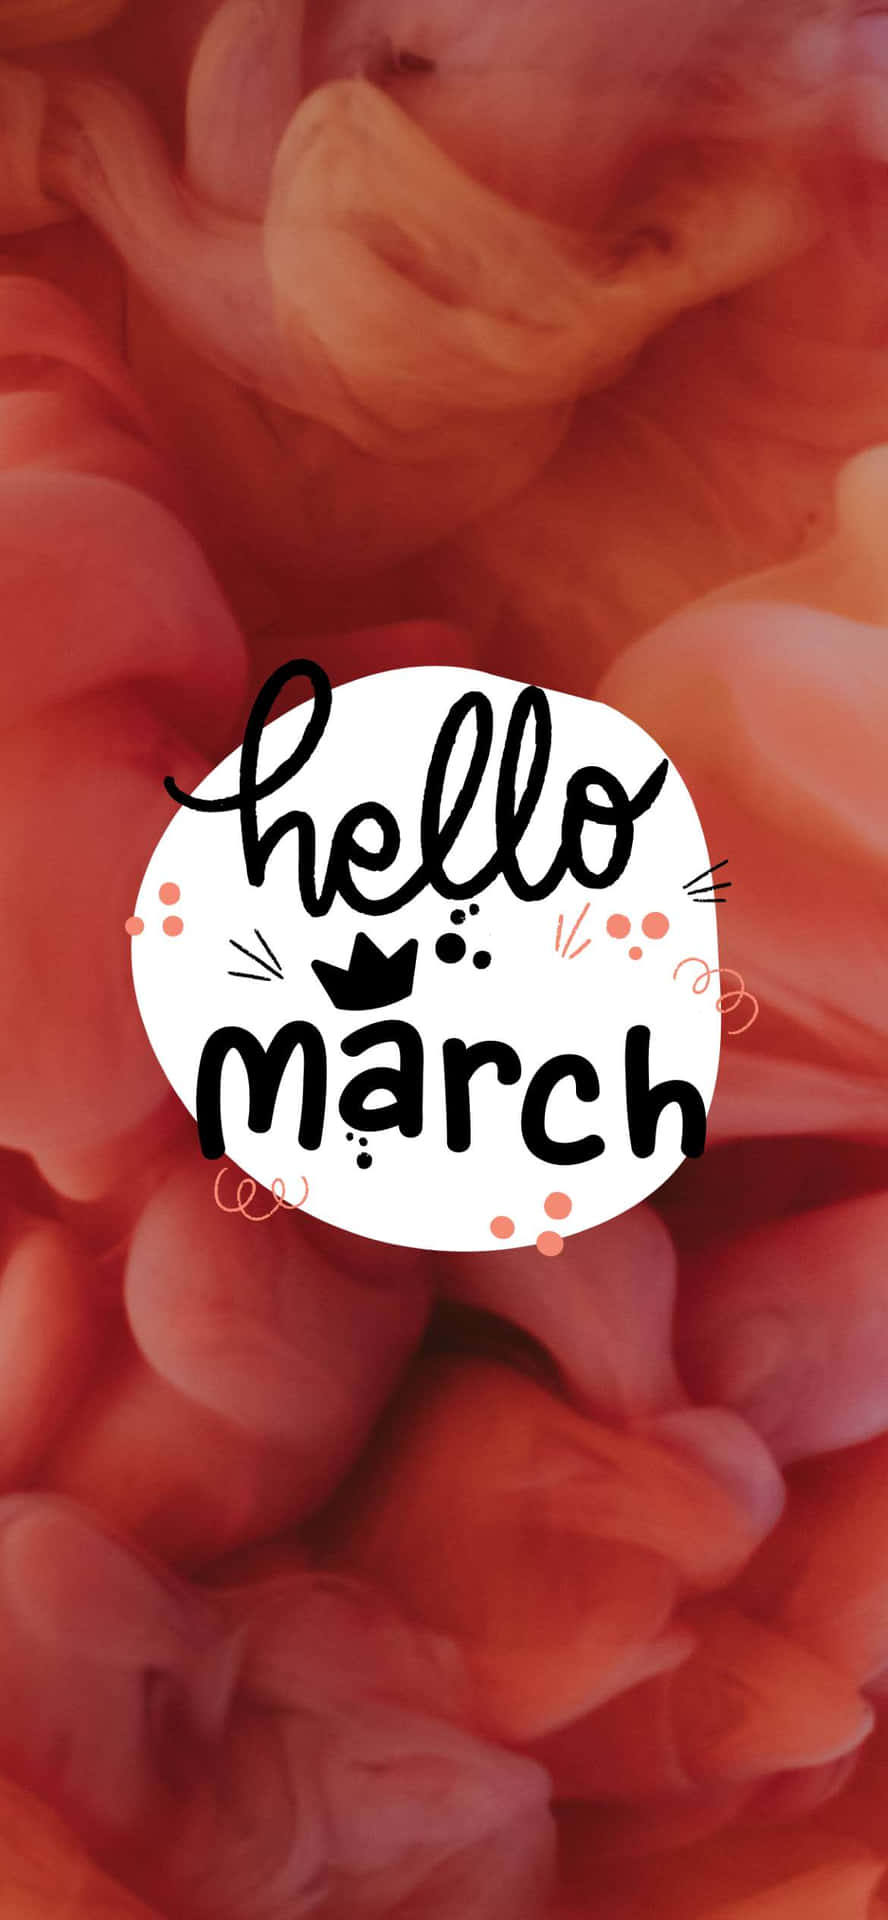 ¡hola,marzo! Da La Bienvenida A La Primavera Con Alegría Y Buen Ánimo. Fondo de pantalla